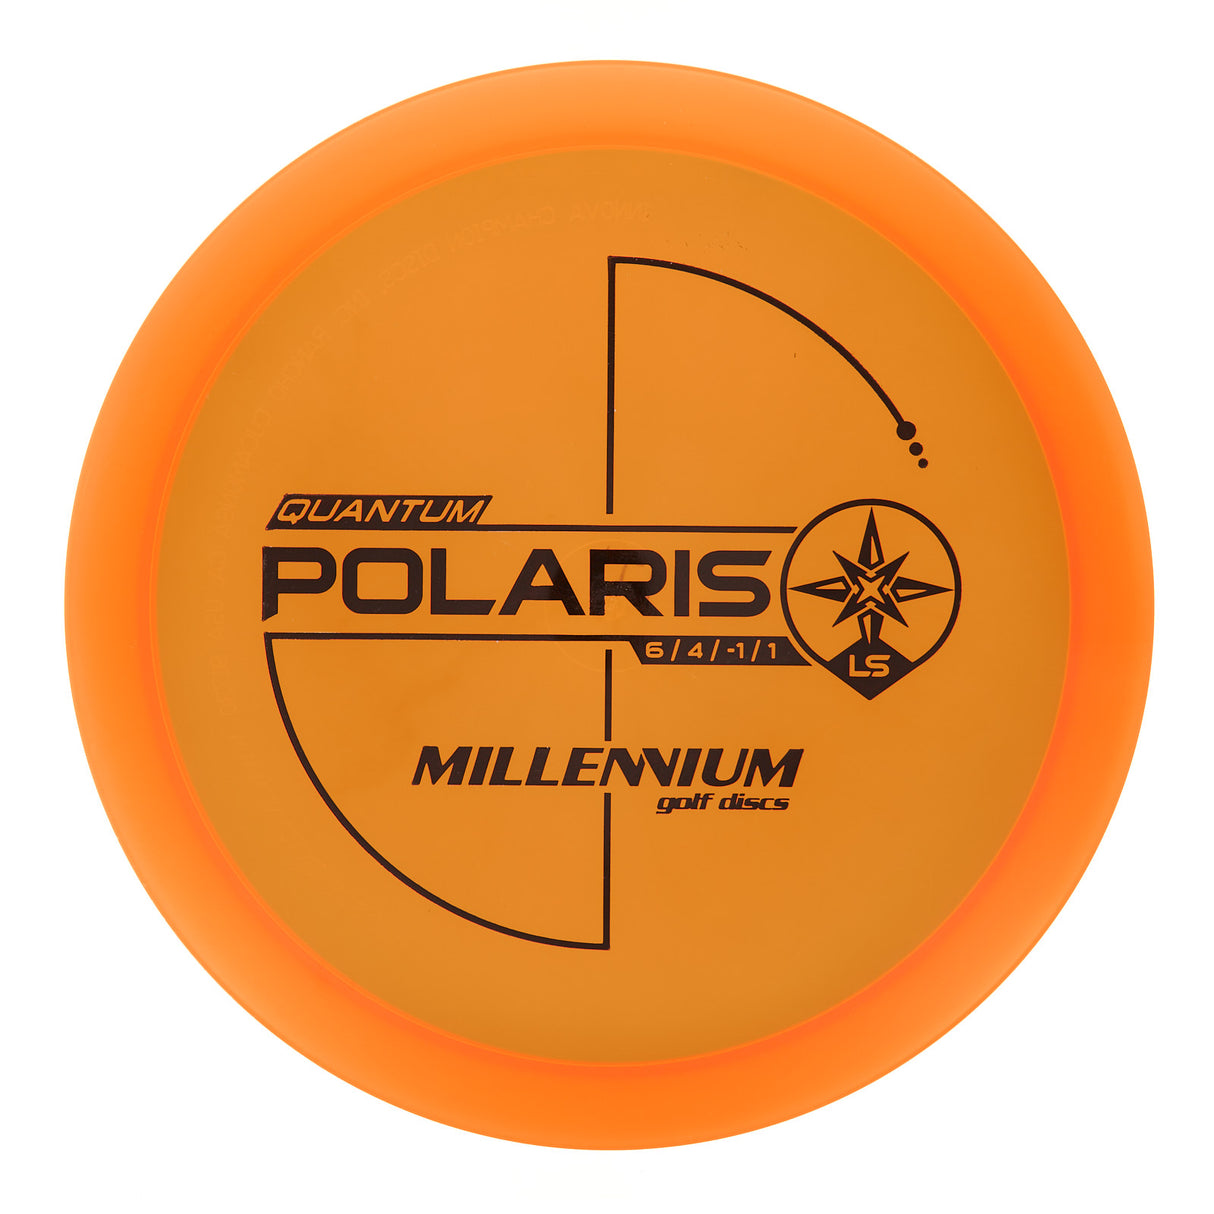 Millennium Polaris LS - Quantum 171g | Style 0001